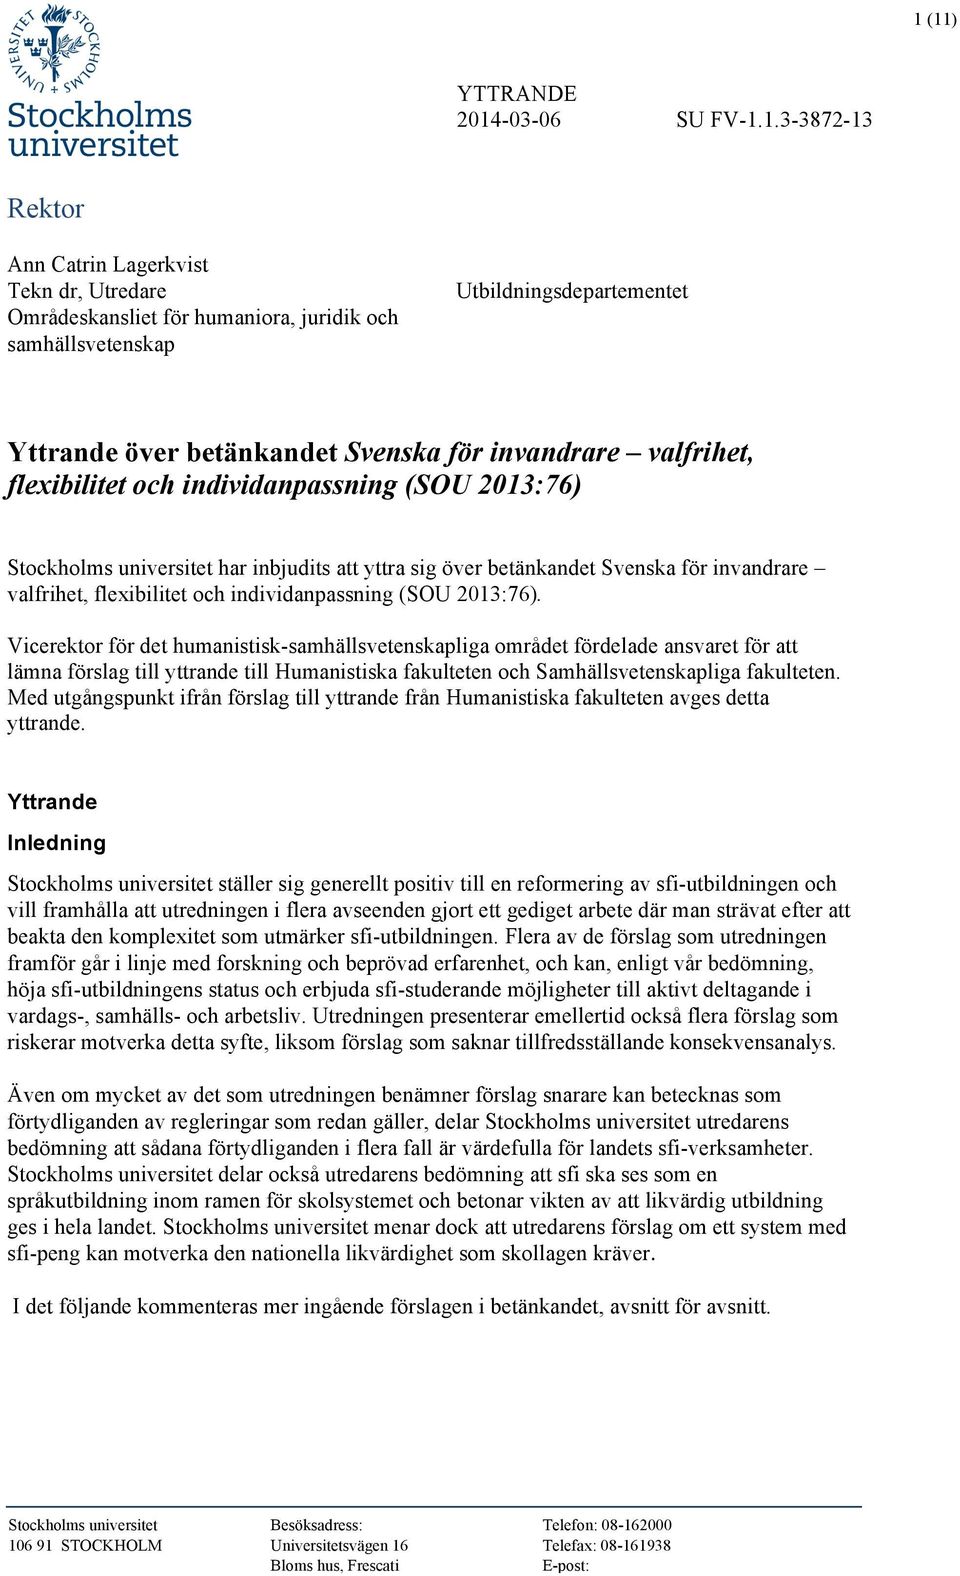 flexibilitet och individanpassning (SOU 2013:76).